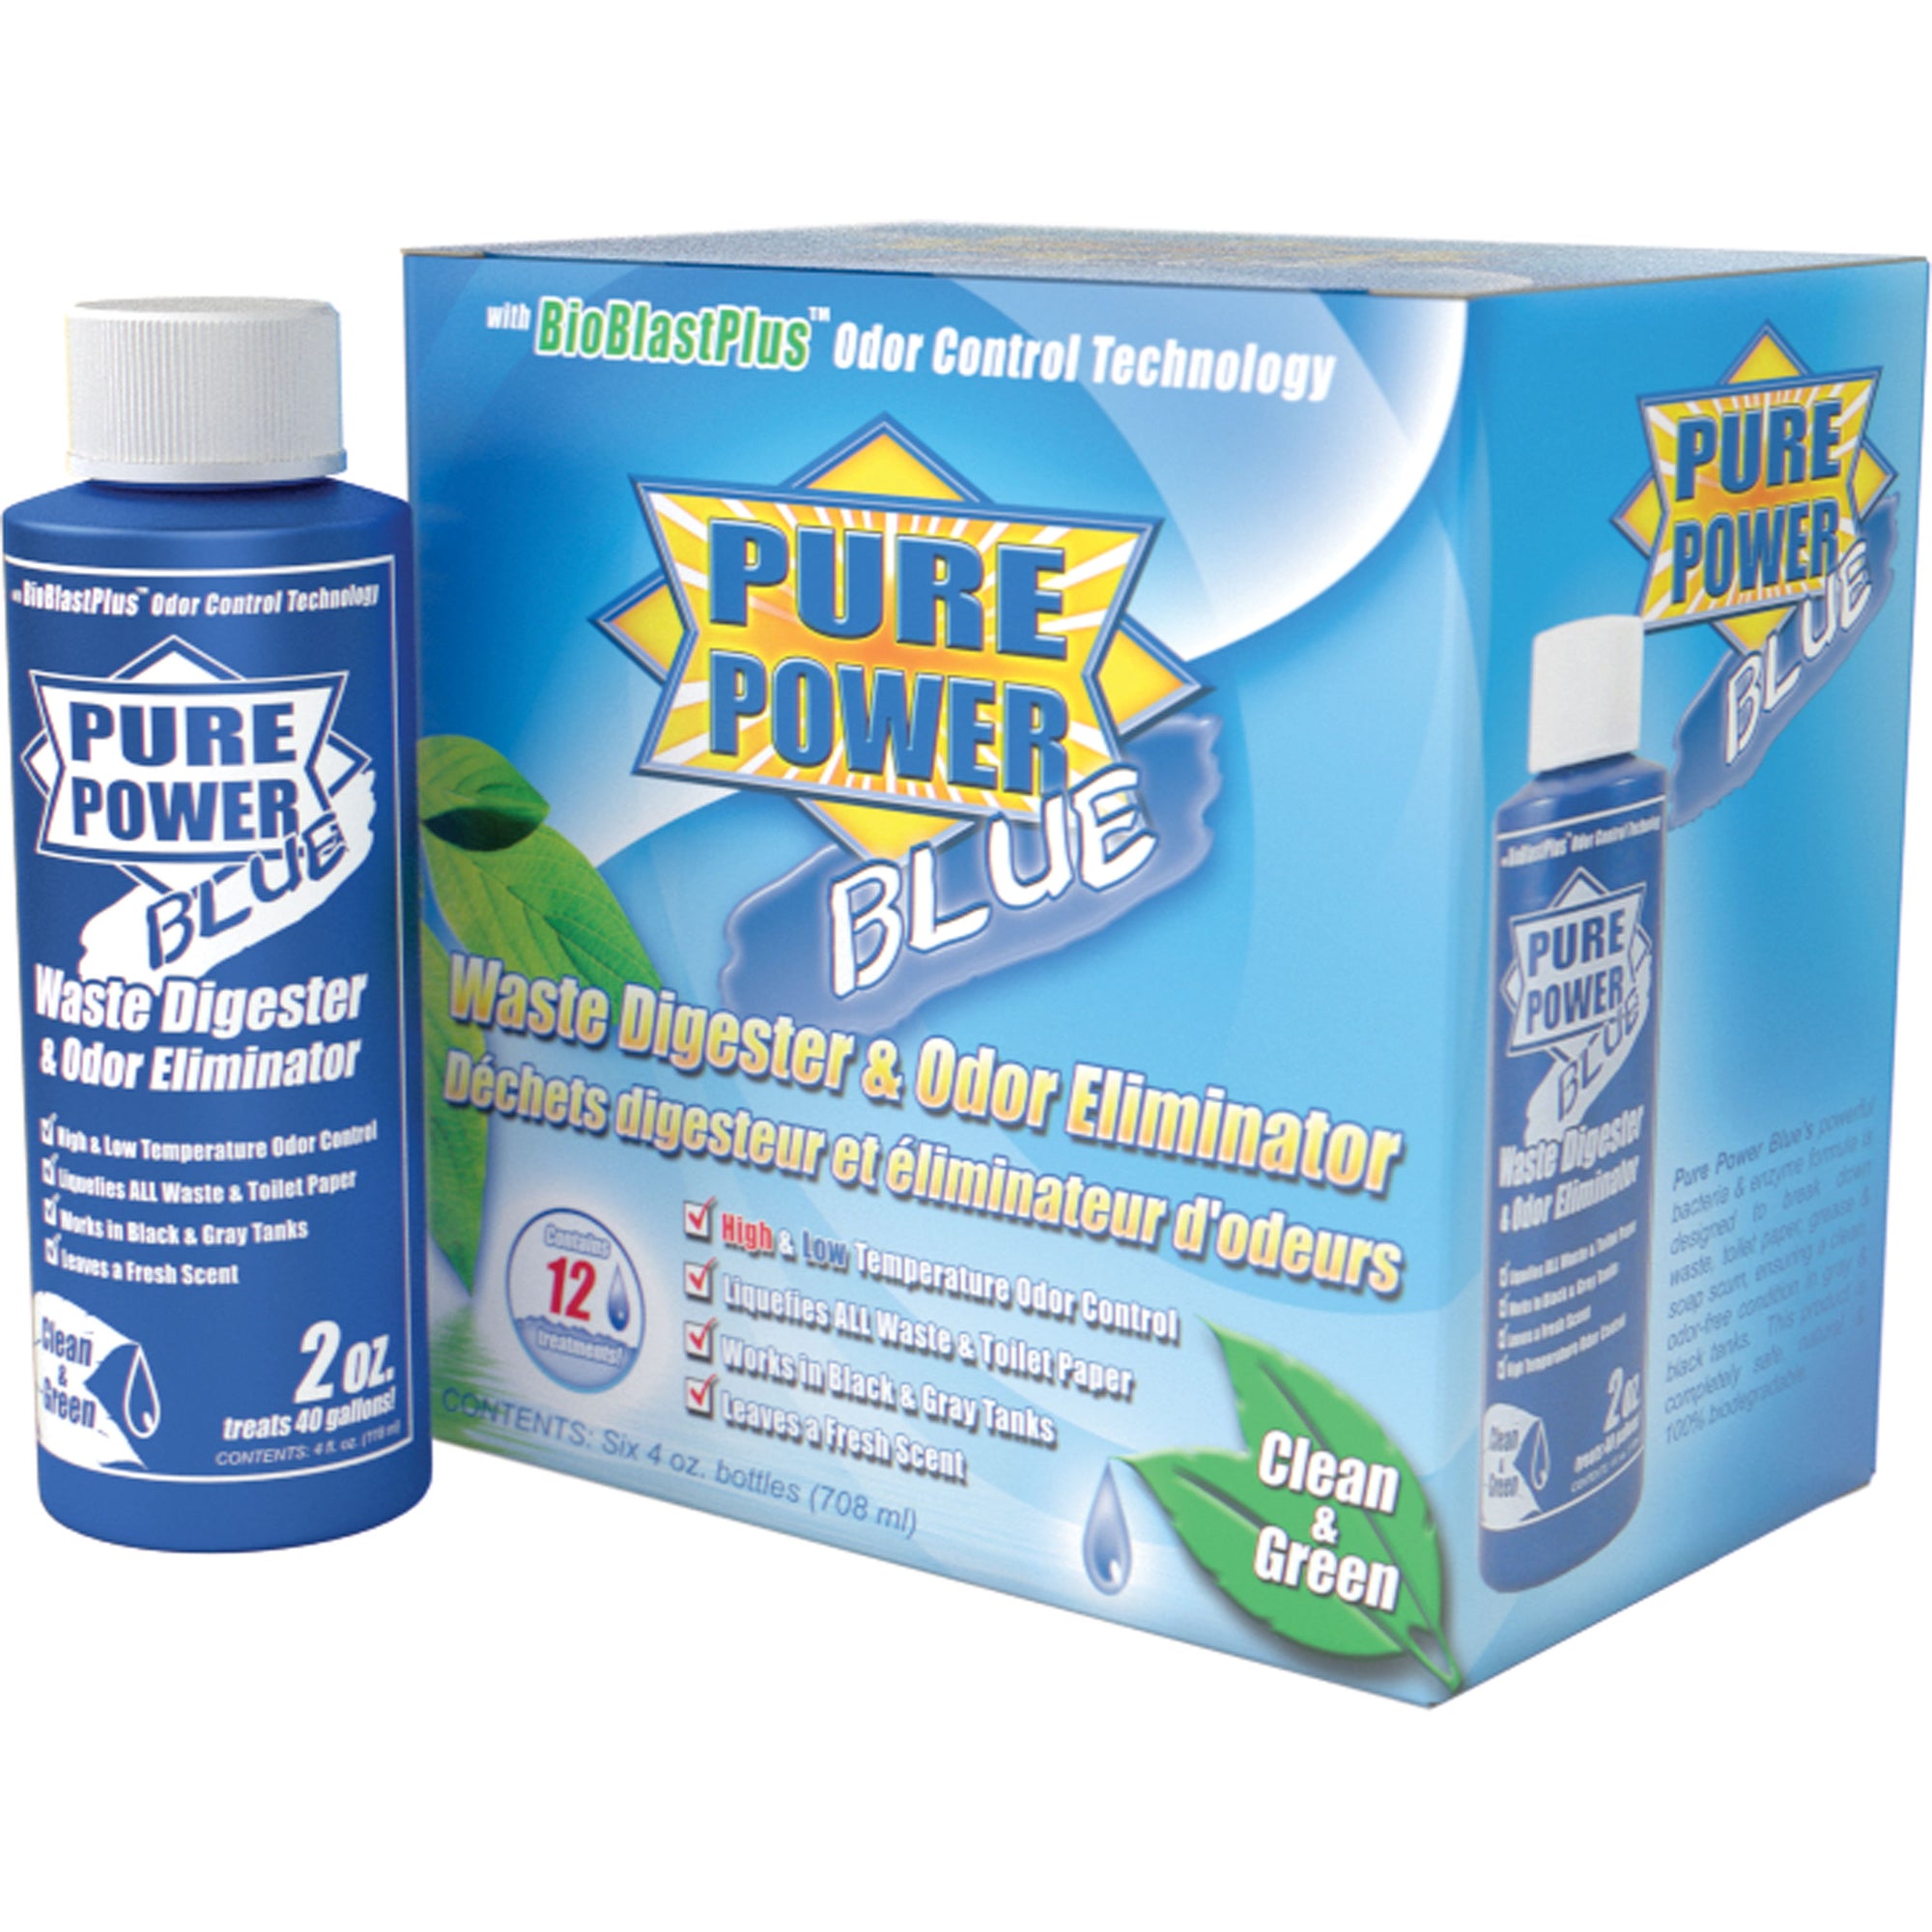 Valterra V23017 Pure Power Blue Waste Digester and Odor Eliminator - 4 oz., Pack of 6